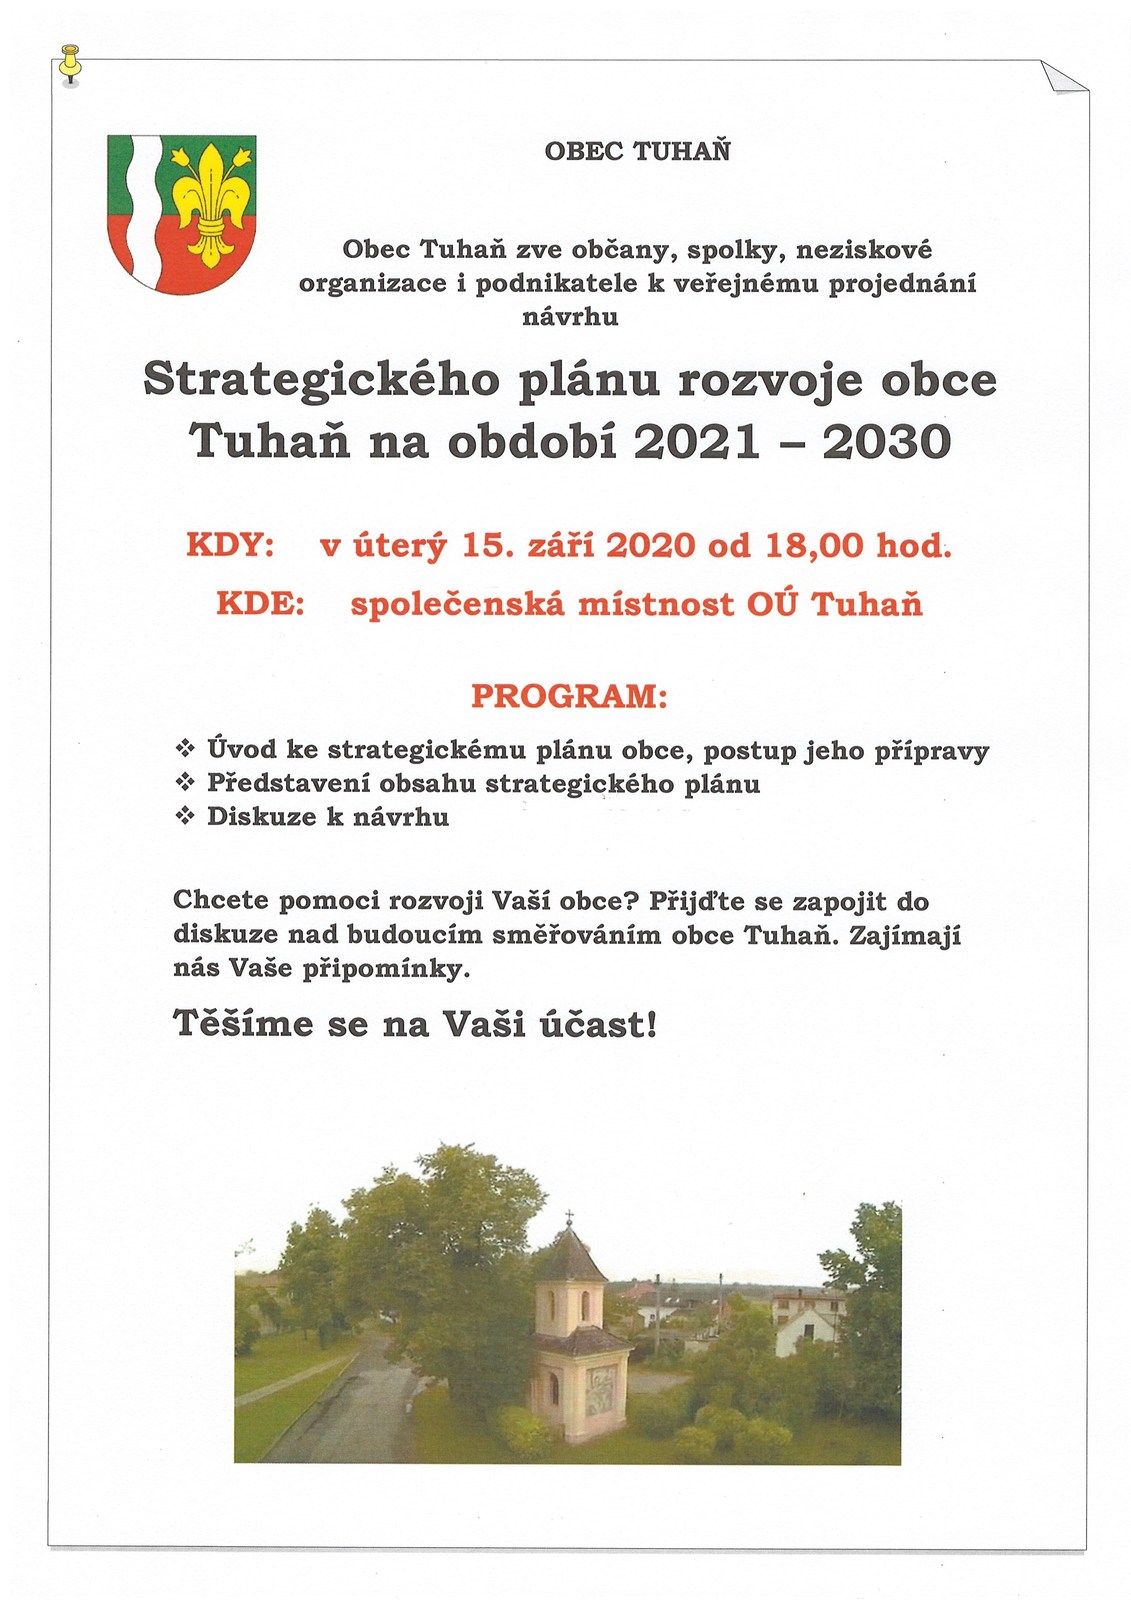 Pozvánka k veřejnému projednání návrhu SPRO 2021 - 2030.jpg